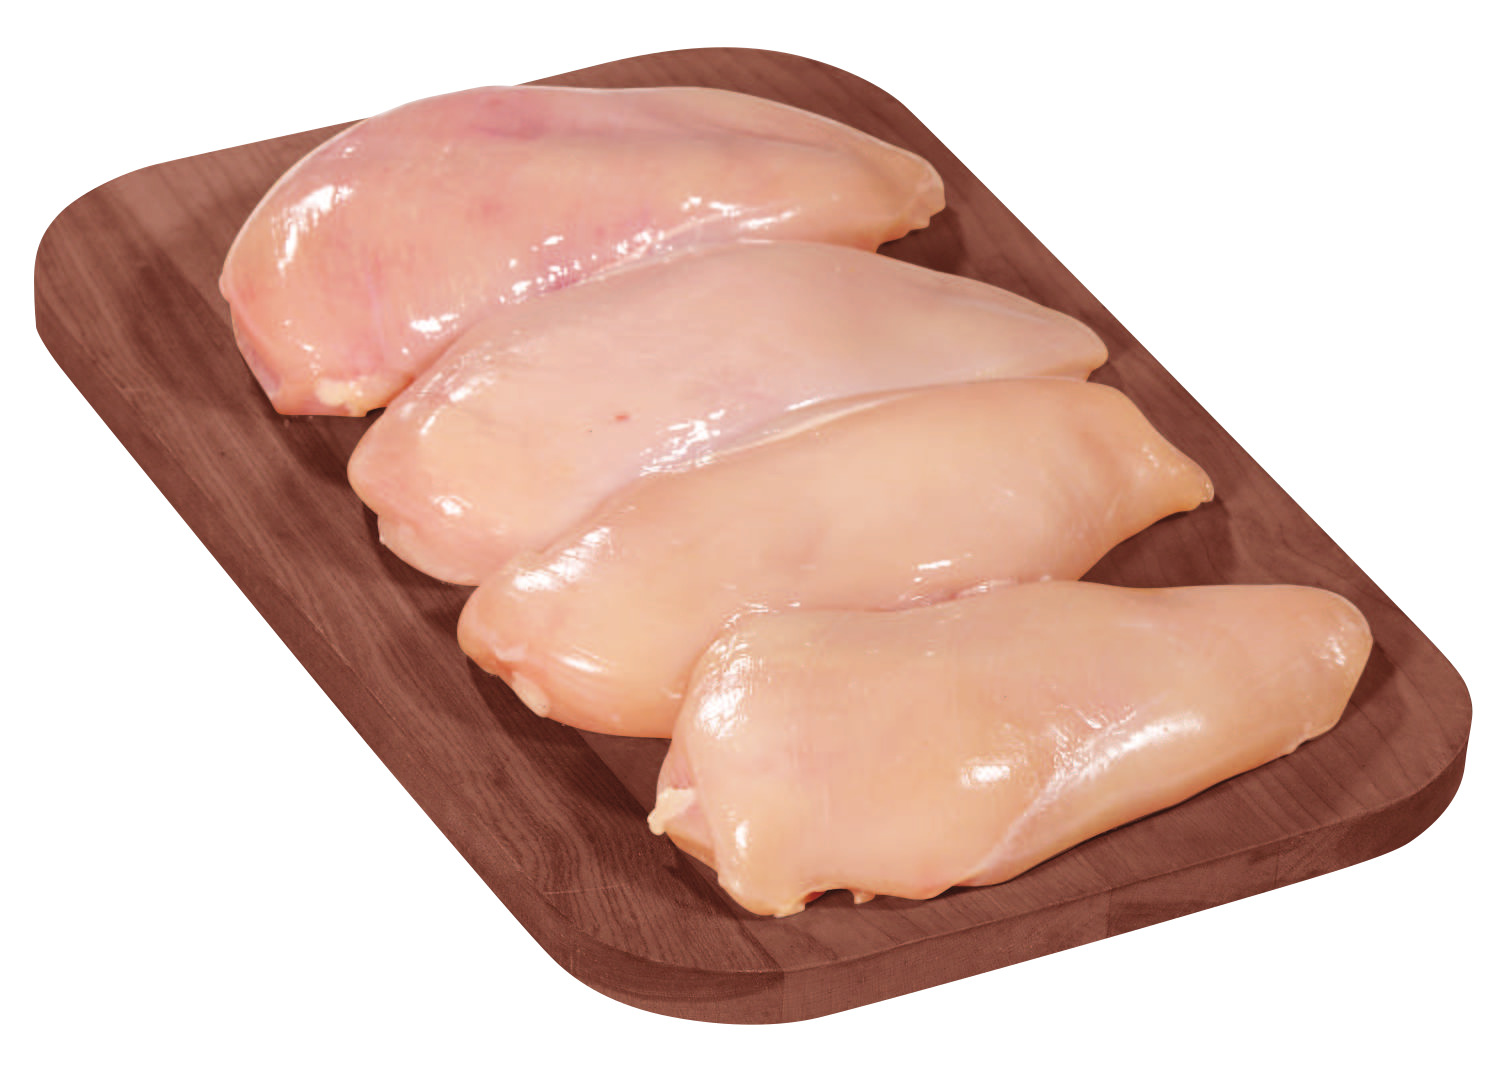 Image chicken breast